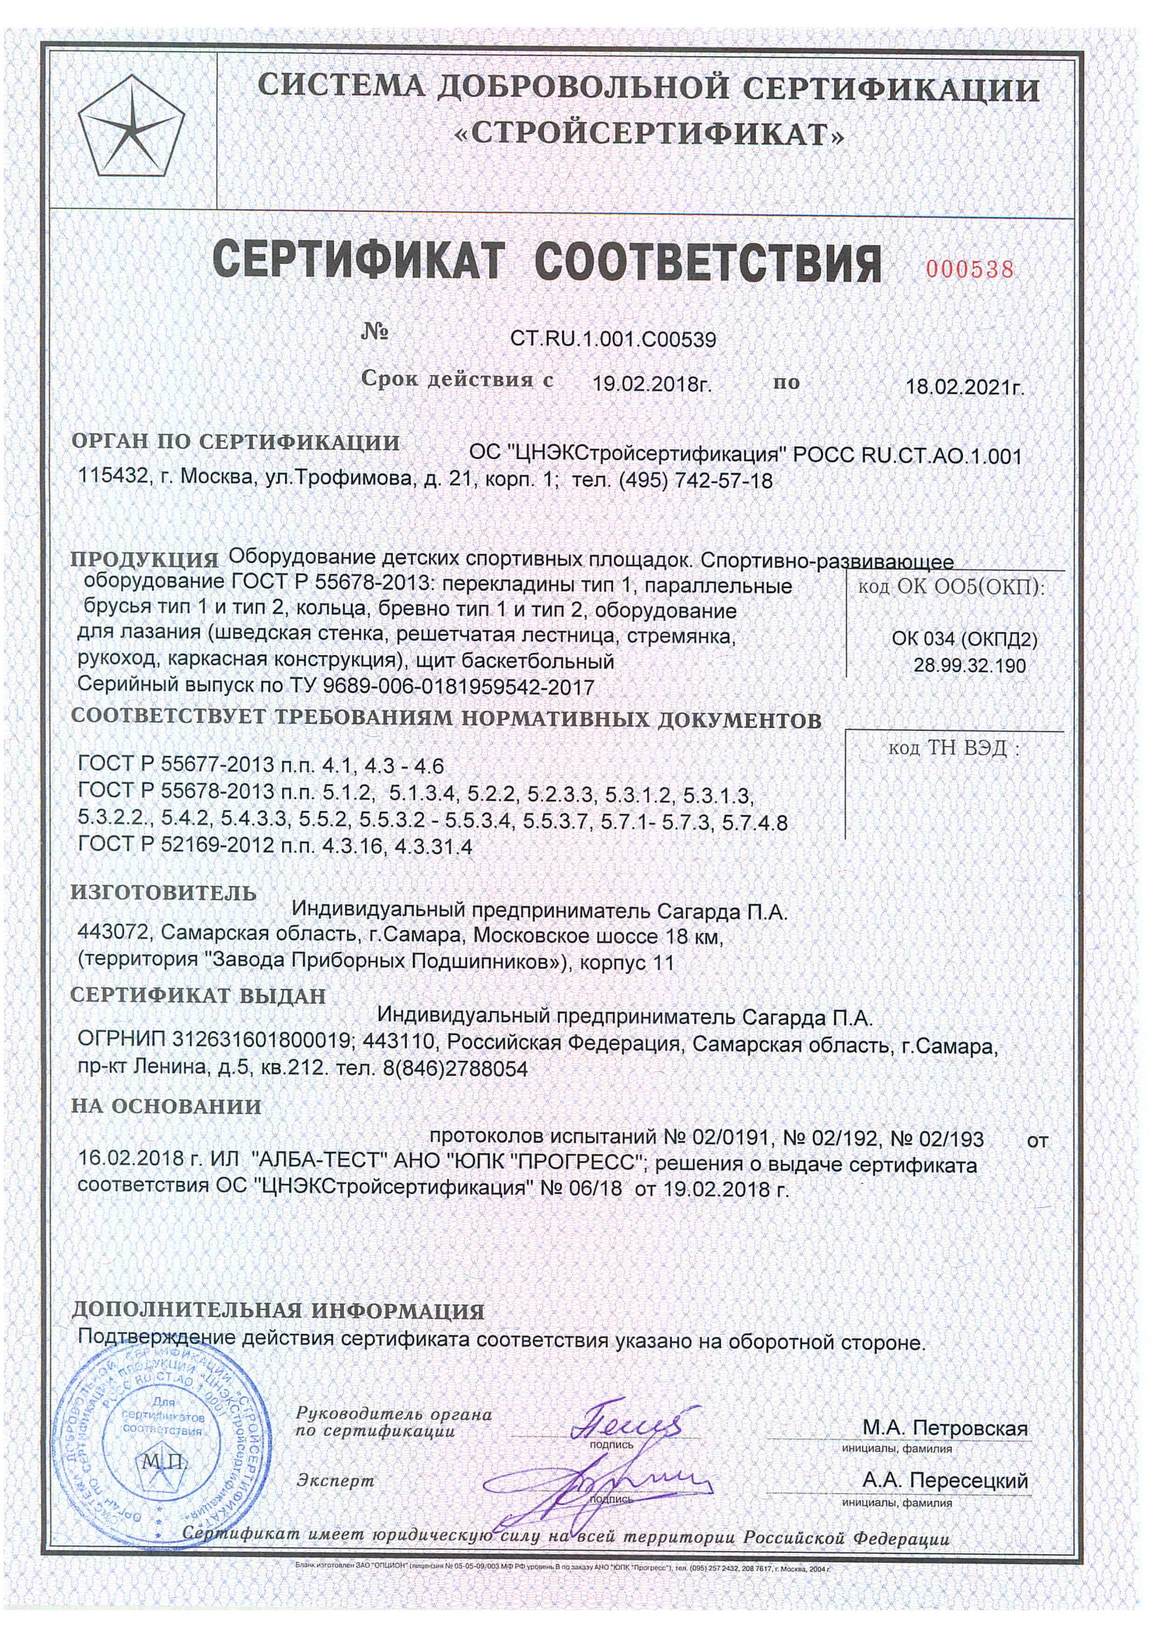 Сертификат на изготовление оборудования детских спортивных площадок